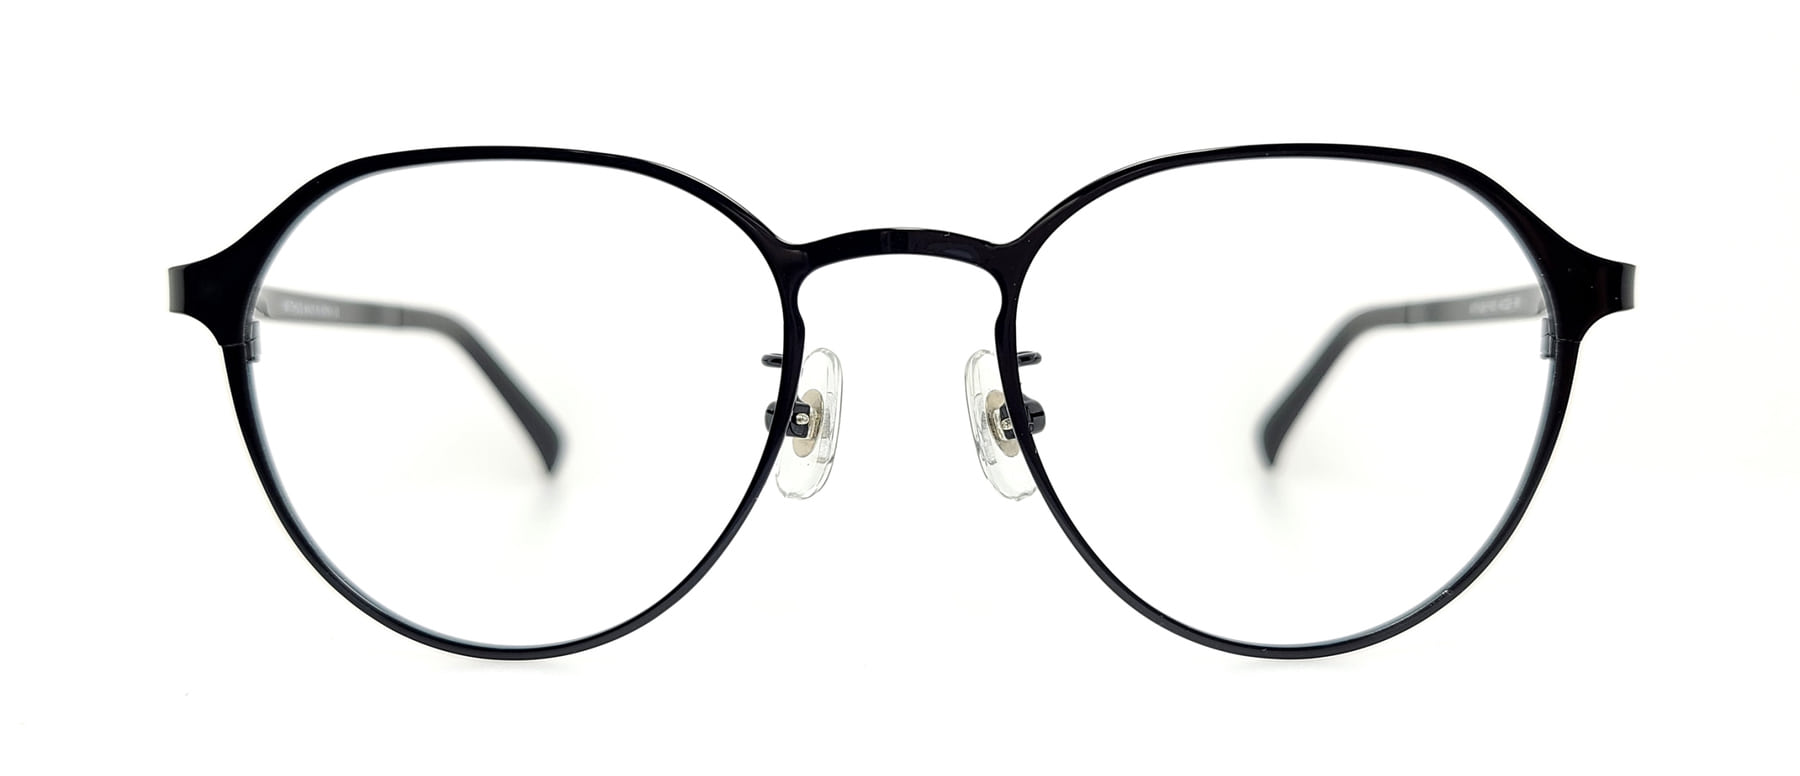 WITHUS-7431, Korean glasses, sunglasses, eyeglasses, glasses